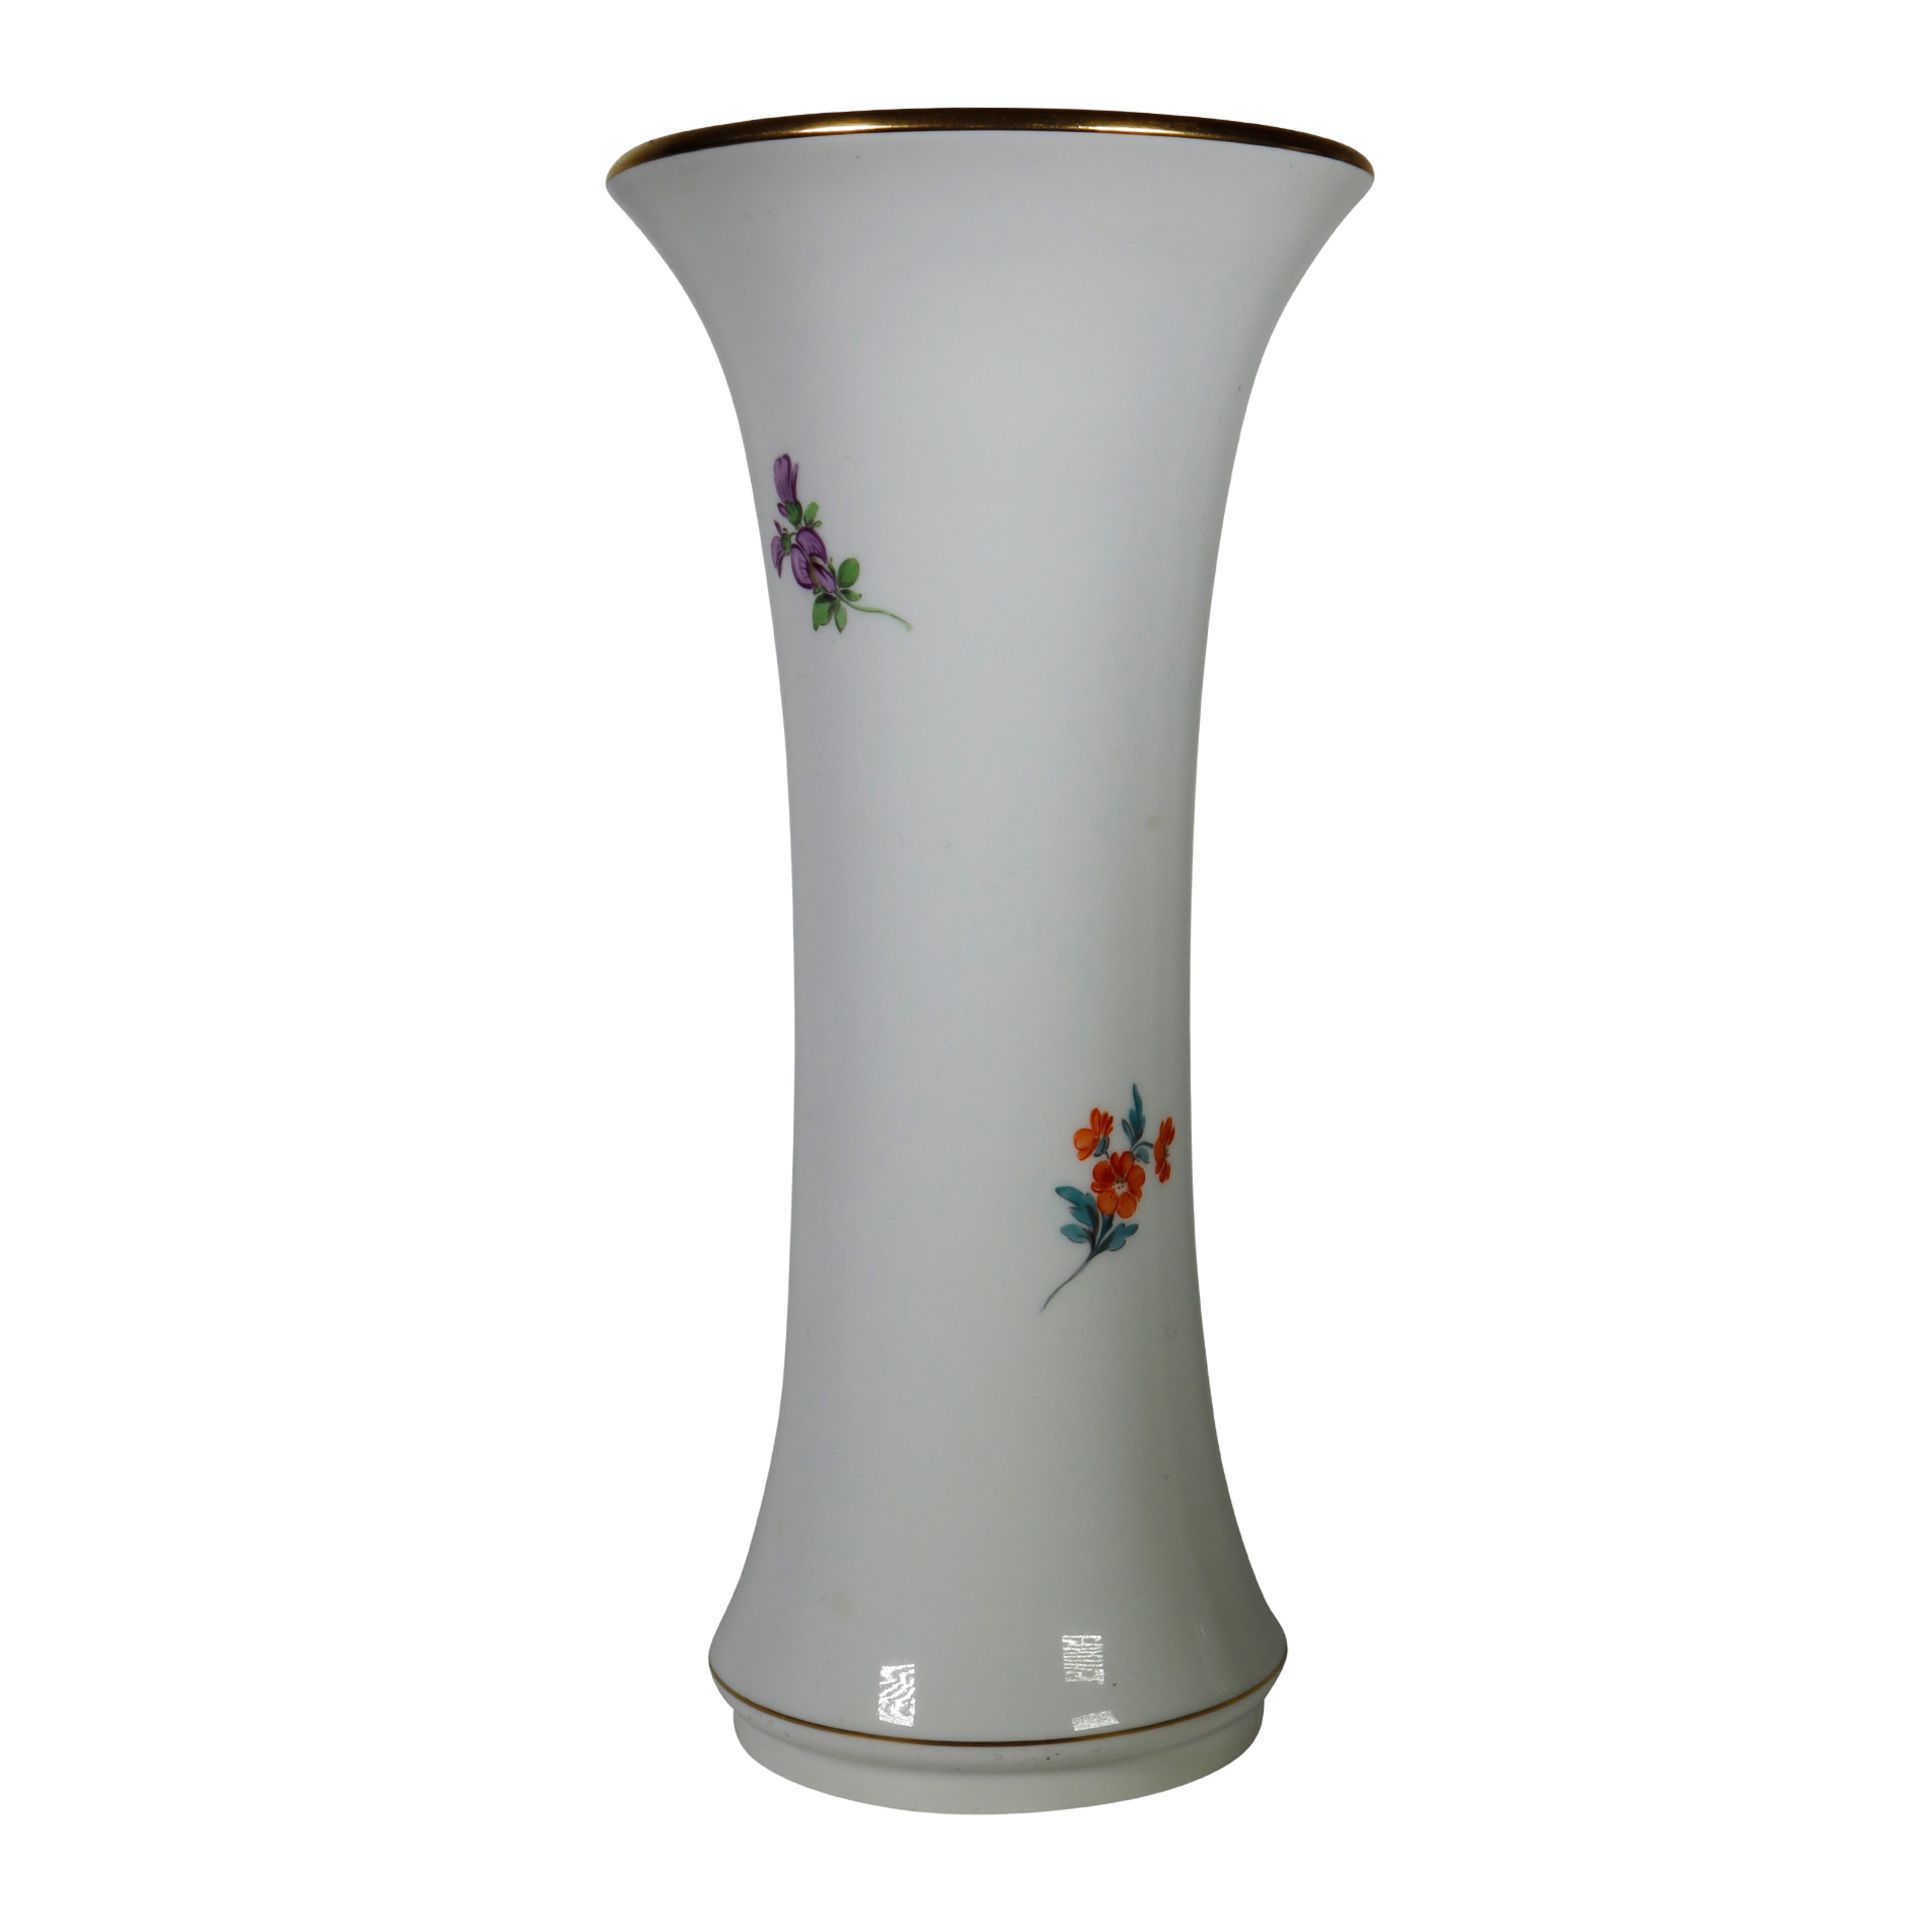 MEISSEN Porzellan Vase mit Blumen - Image 2 of 3